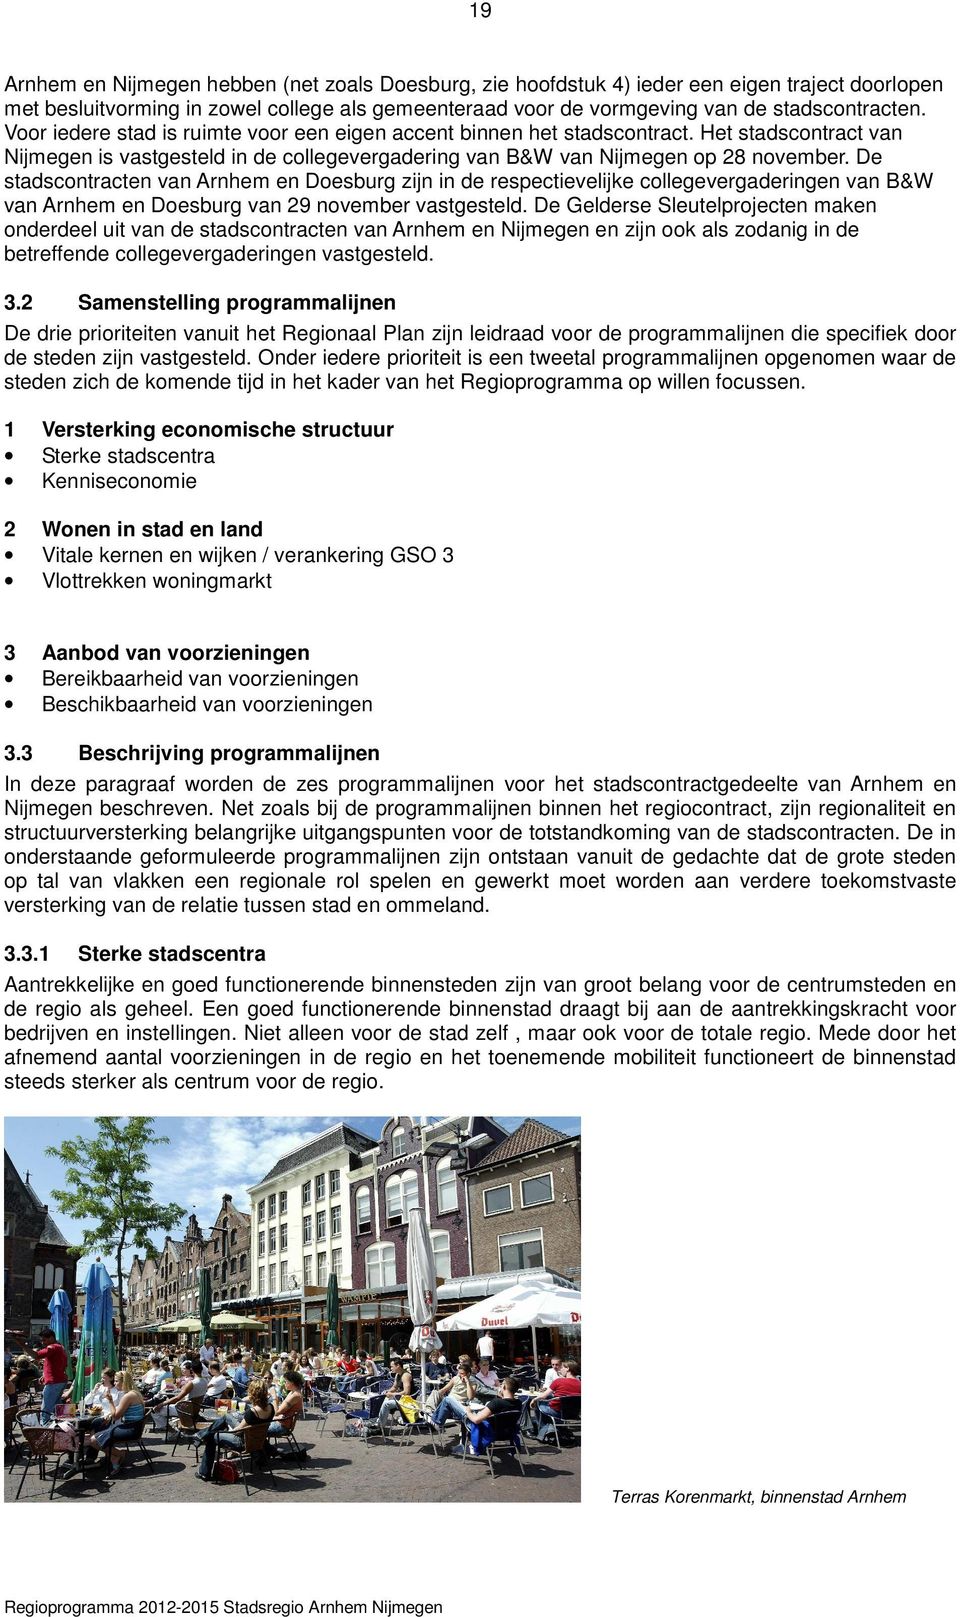 De stadscontracten van Arnhem en Doesburg zijn in de respectievelijke collegevergaderingen van B&W van Arnhem en Doesburg van 29 november vastgesteld.